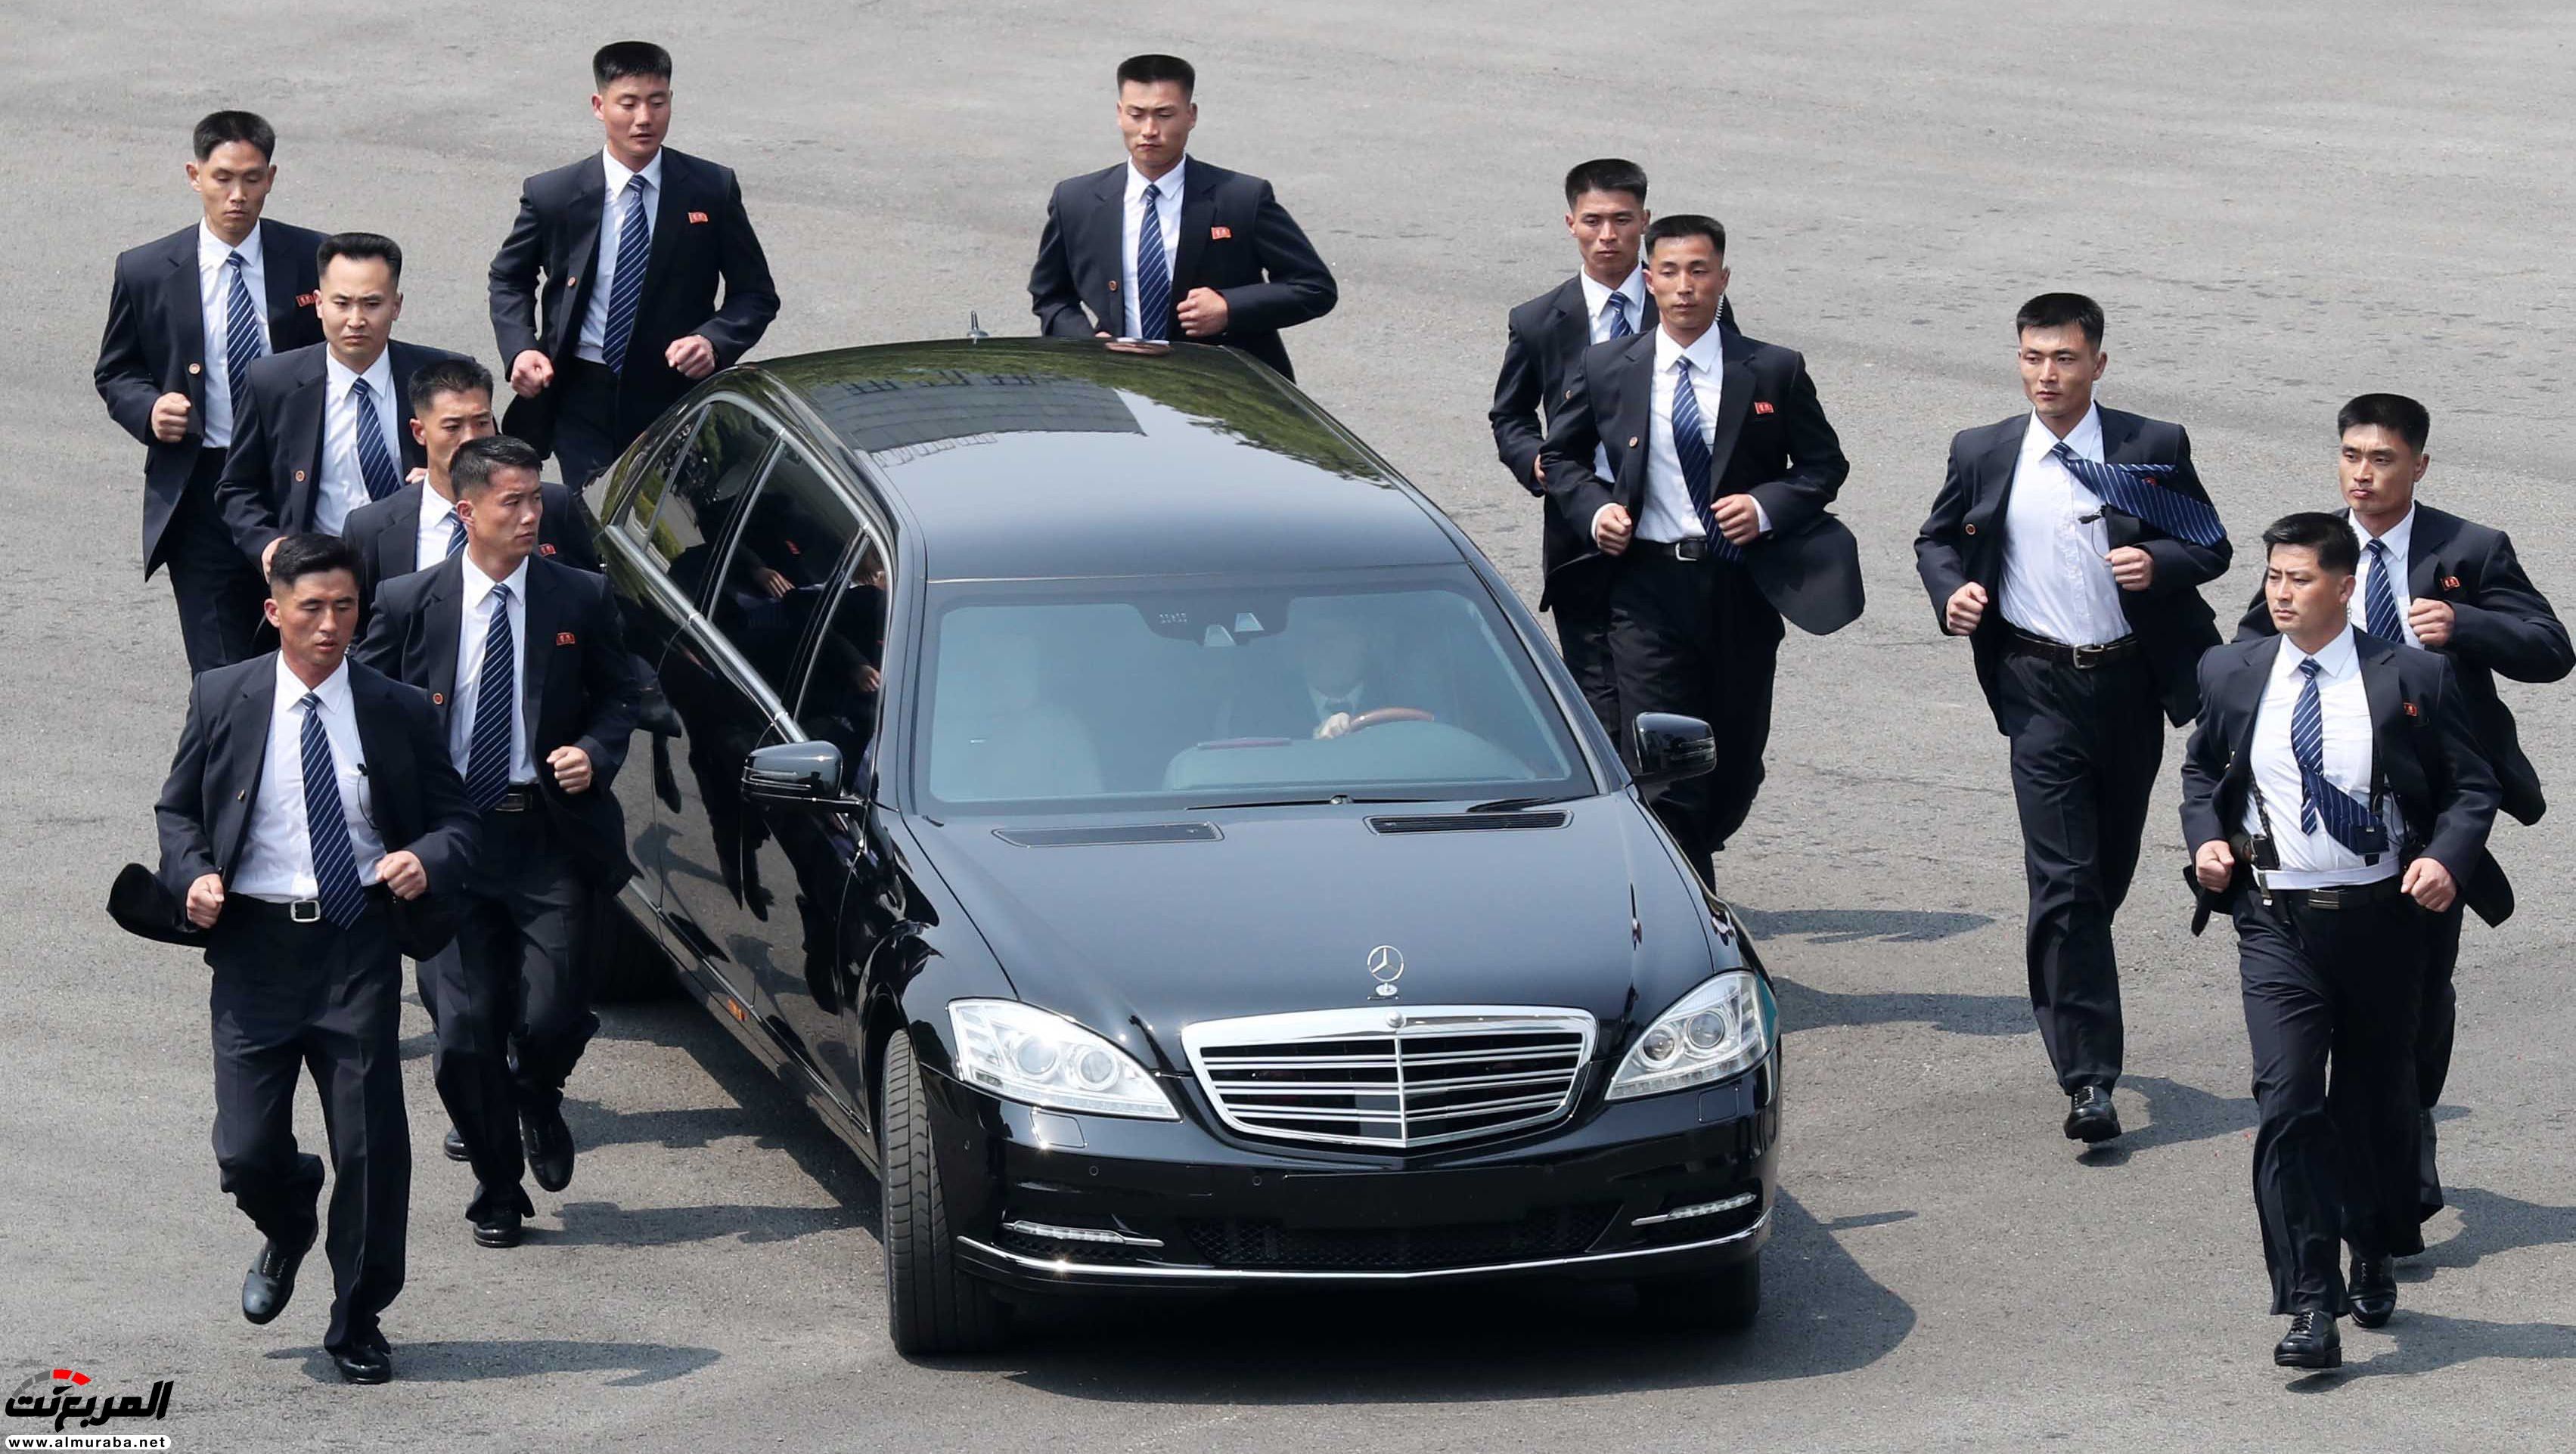 سر امتلاك زعيم كوريا الشمالية سيارات مرسيدس بولمان المحظورة على بلاده 3